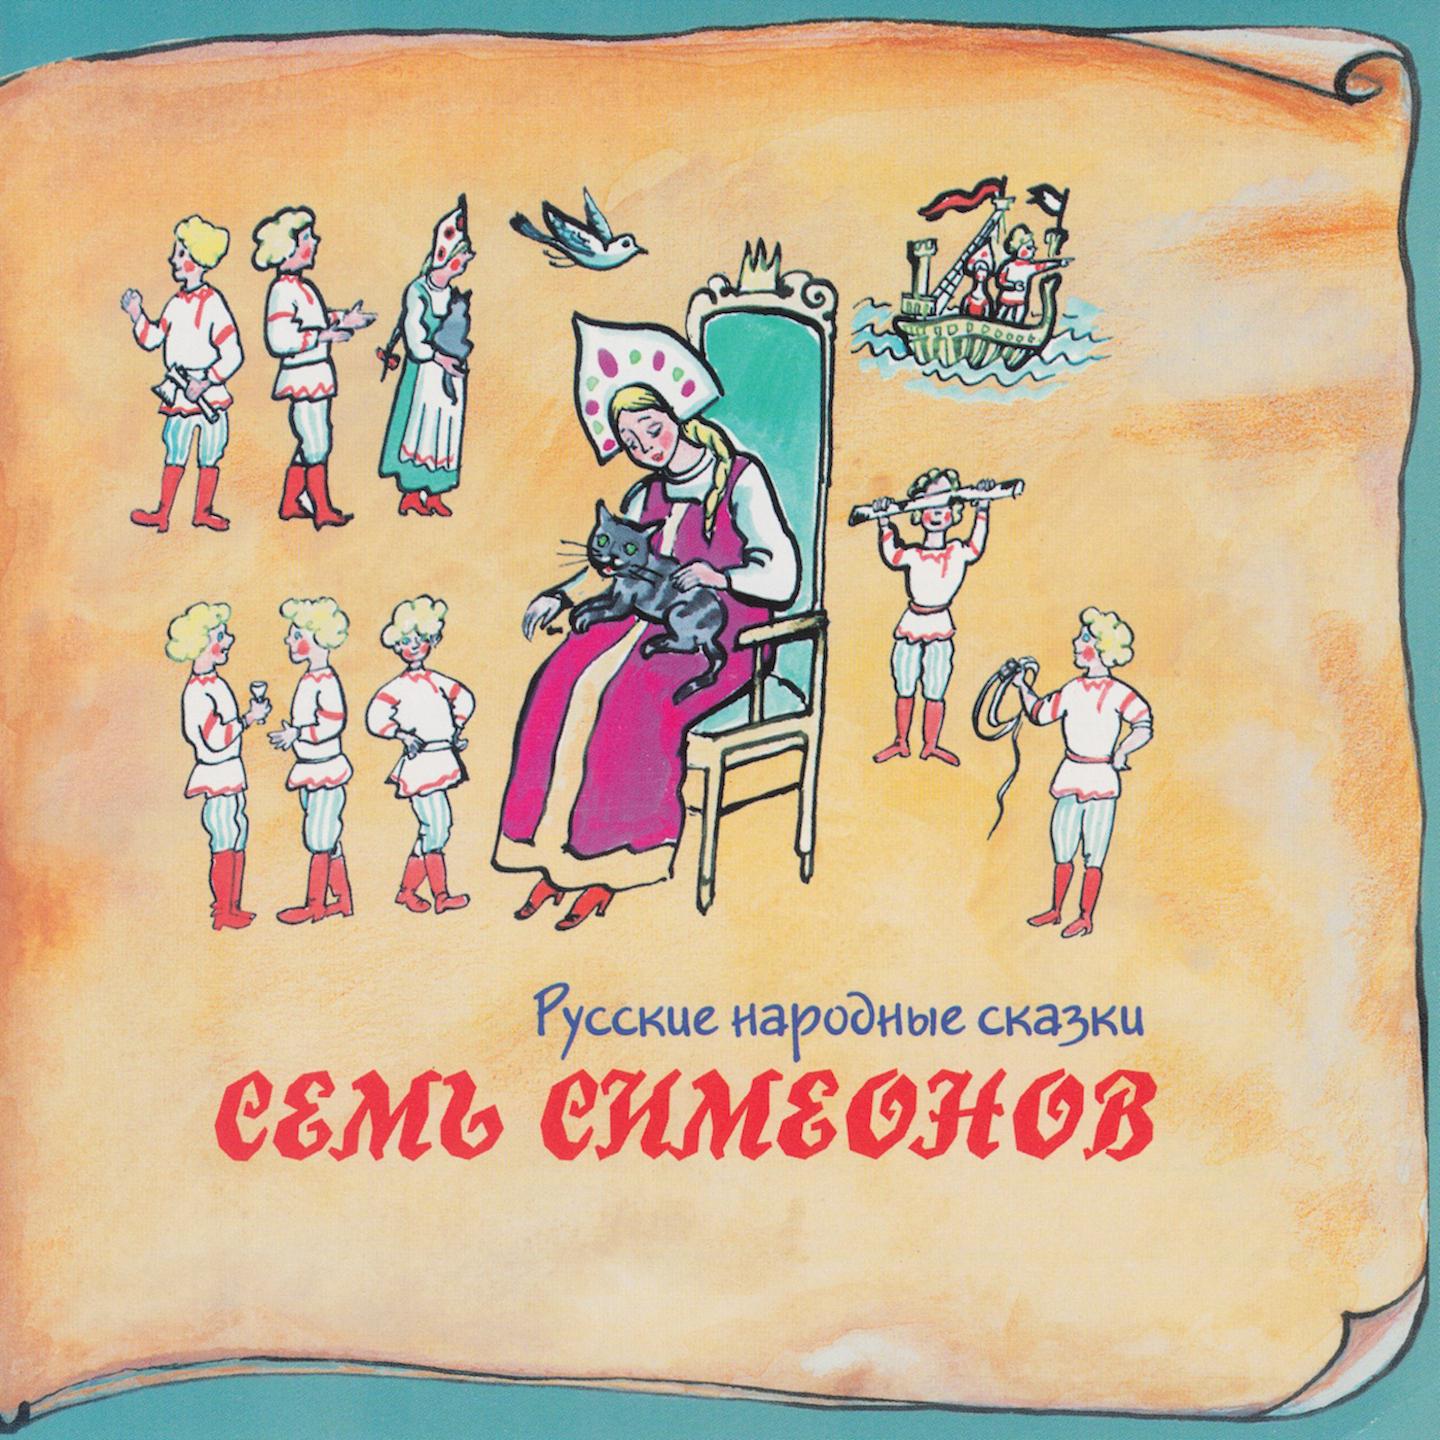 2 сказки о семье. Семь Симеонов русская народная сказка. Книга семь Симеонов семь работников. Сказки о семье. Семь Симеонов иллюстрации к сказке.